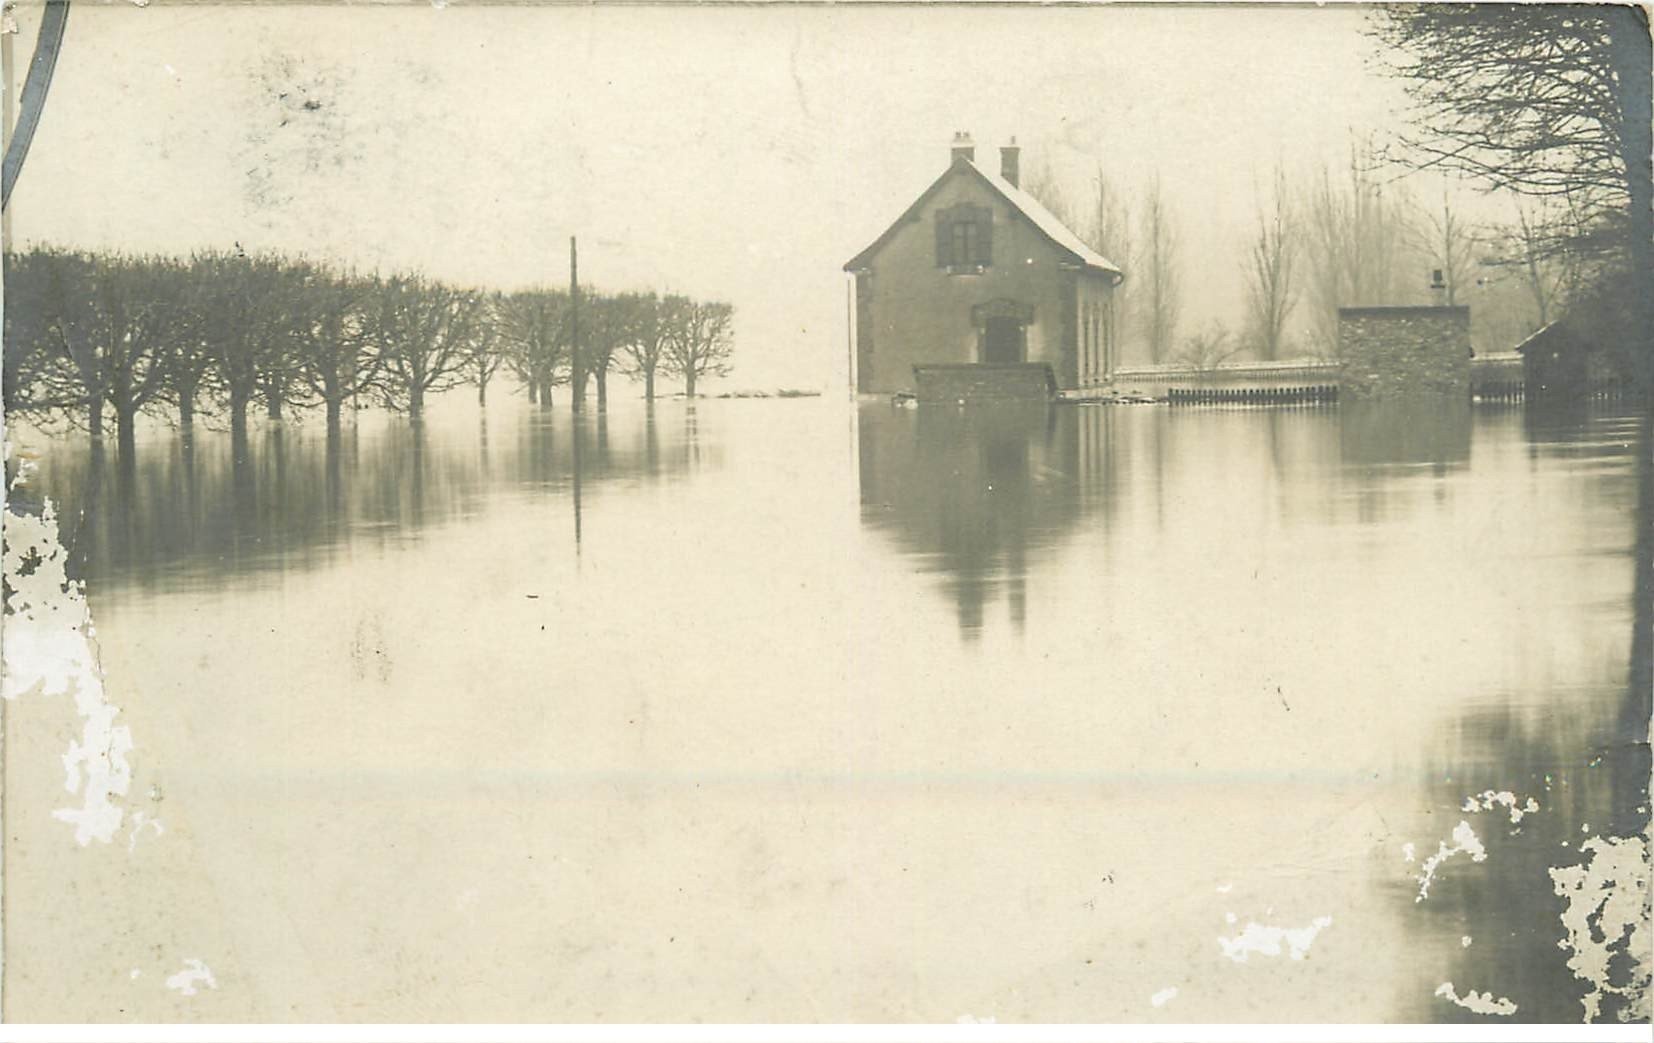 Inondations et Crue de 1910. COLOMBES 92. Carte Photo. Etat moyen...